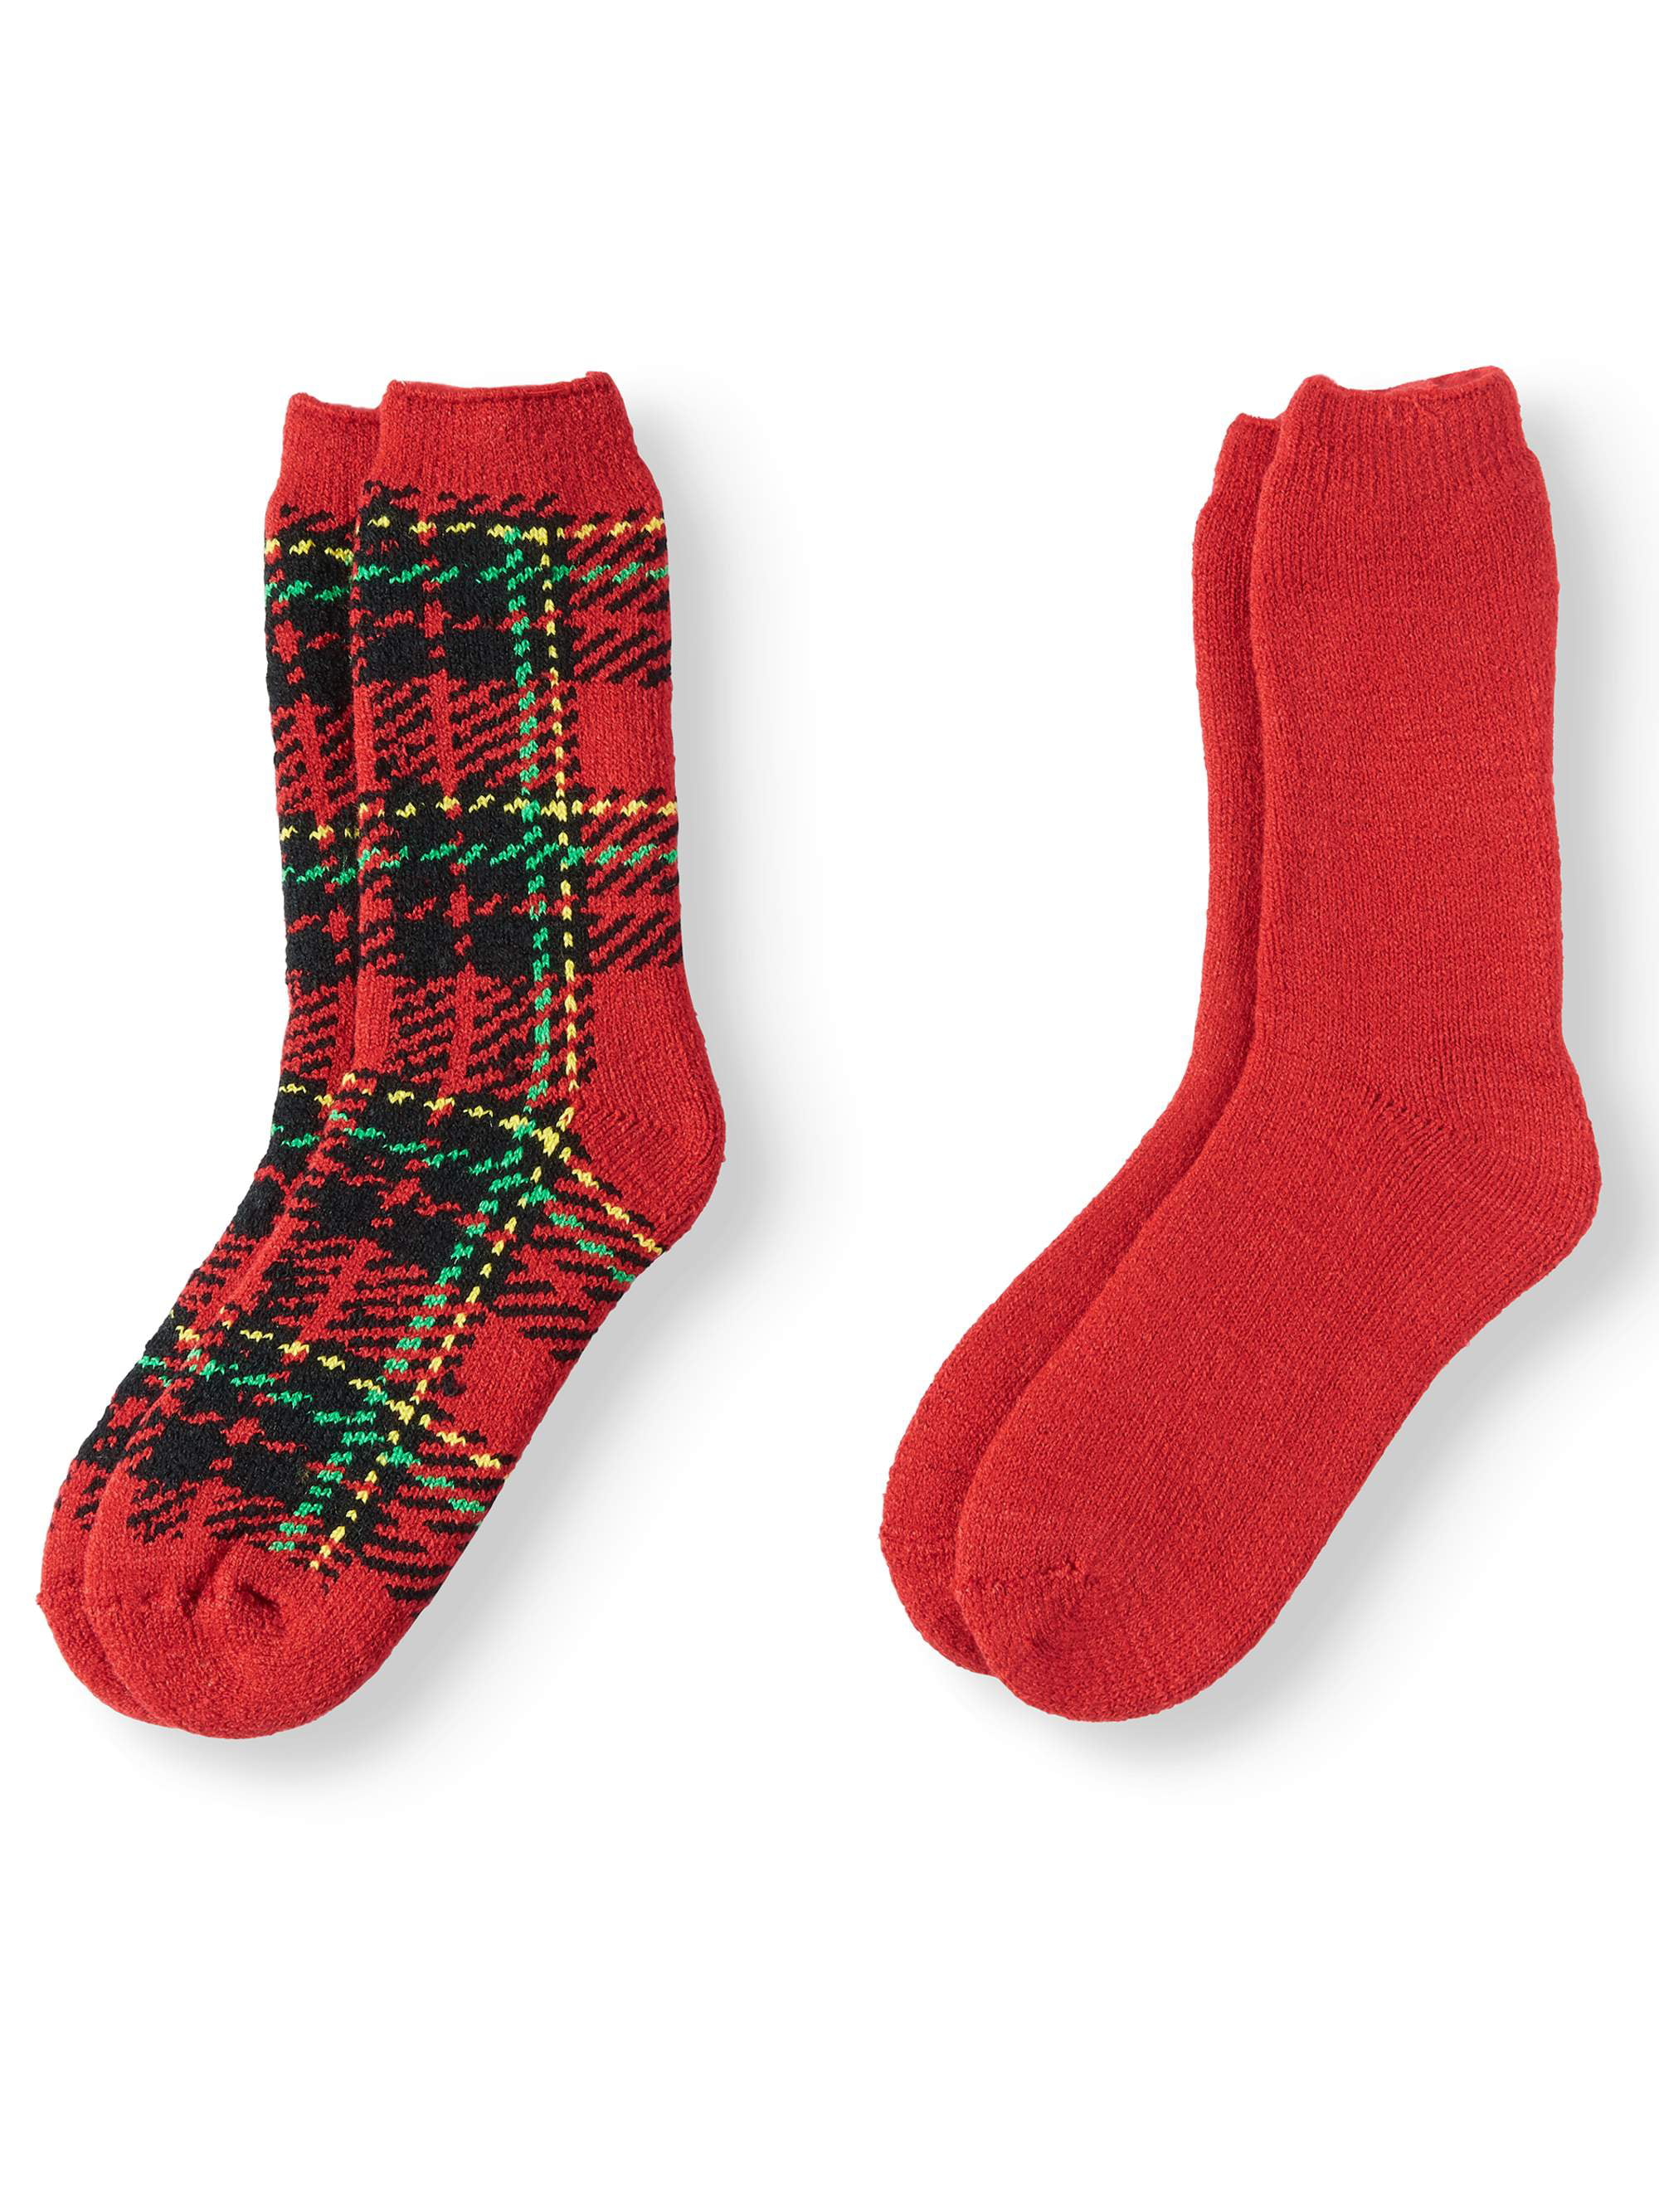 Dickies Women's Wool Blend Thermal Red Black Gray Plaid Socks 2 Pair Size 6-9